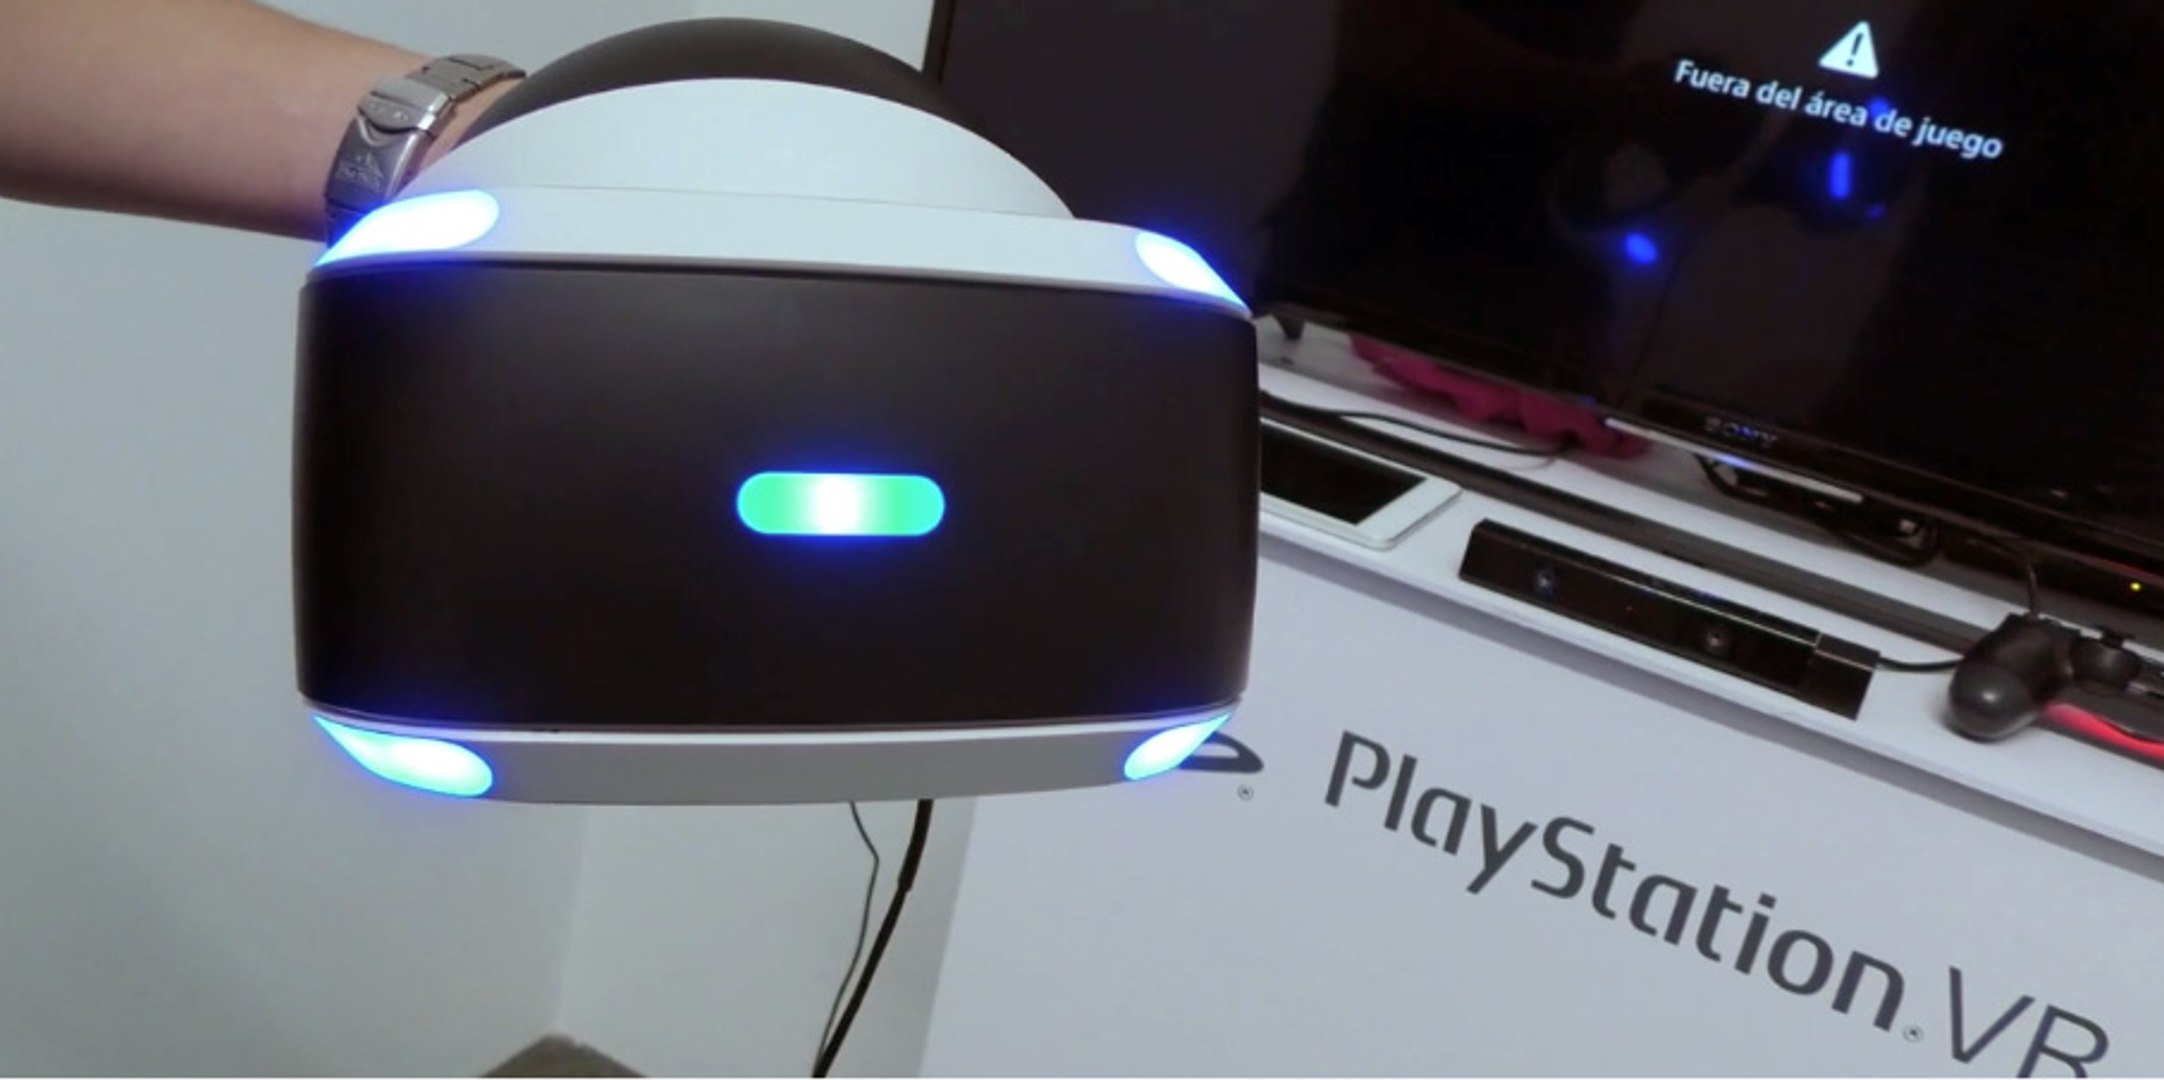 PSVR Cómo se conecta e instalación del headset en PS4